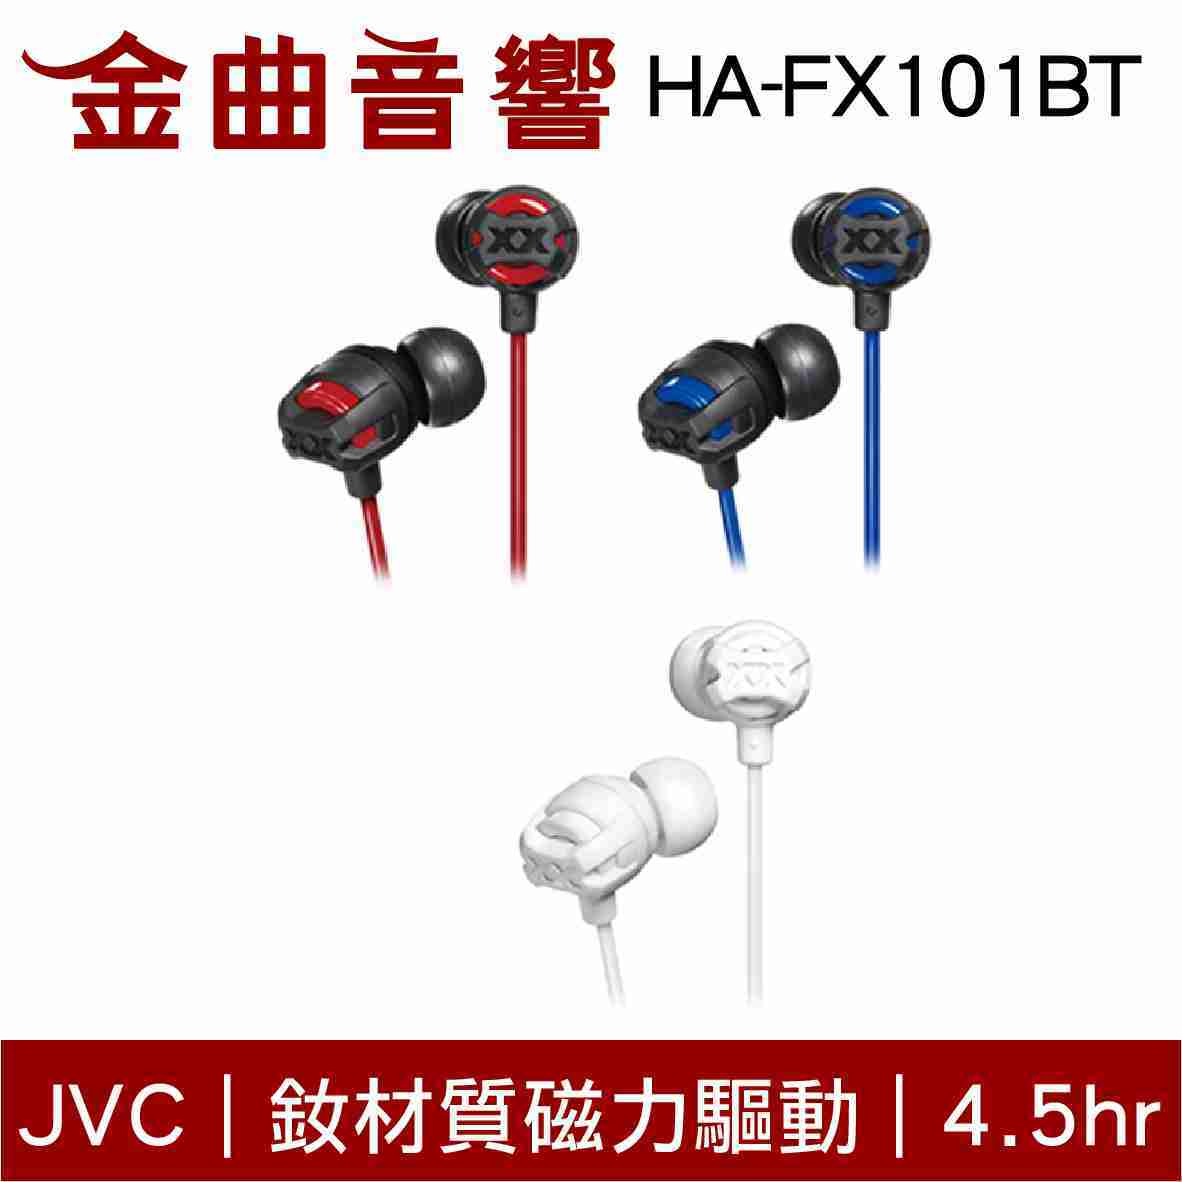 JVC HA-FX101BT 紅色 釹材質磁力驅動 藍芽4.1 無線耳機 | 金曲音響